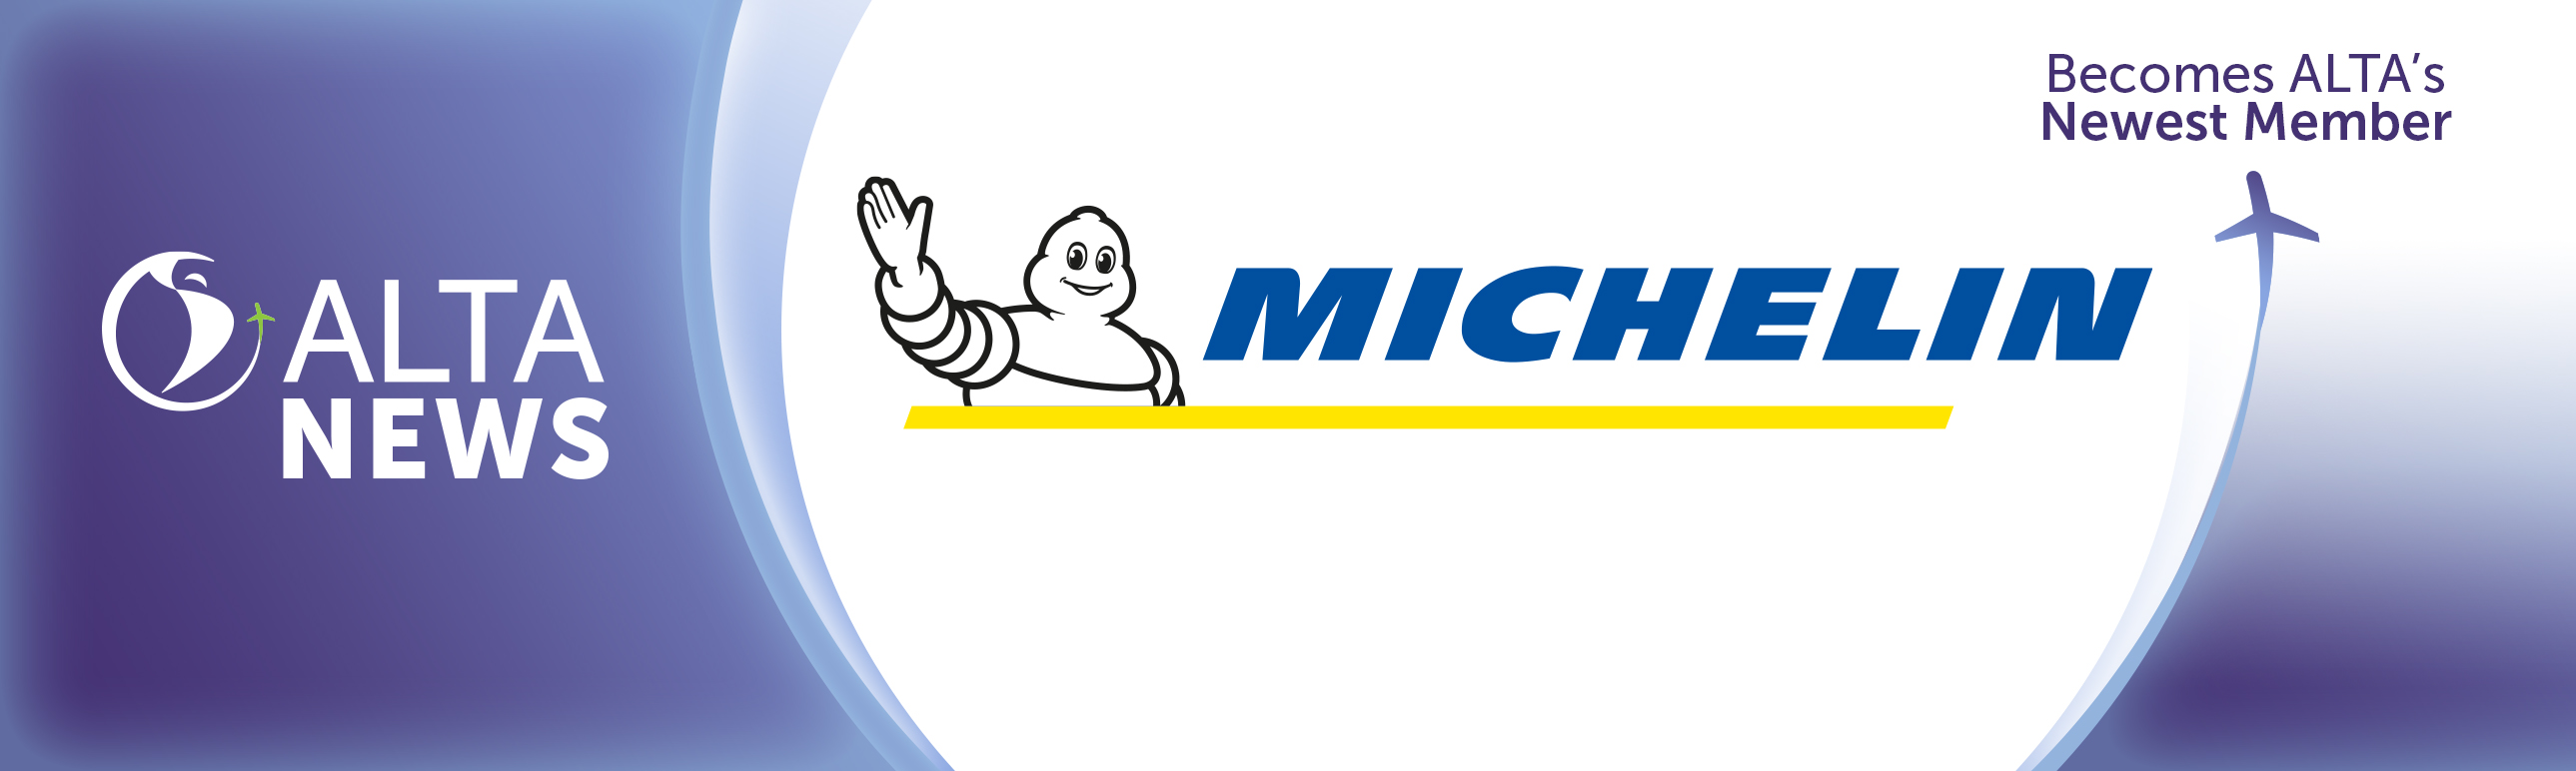 ALTA NEWS - Michelin se une a ALTA